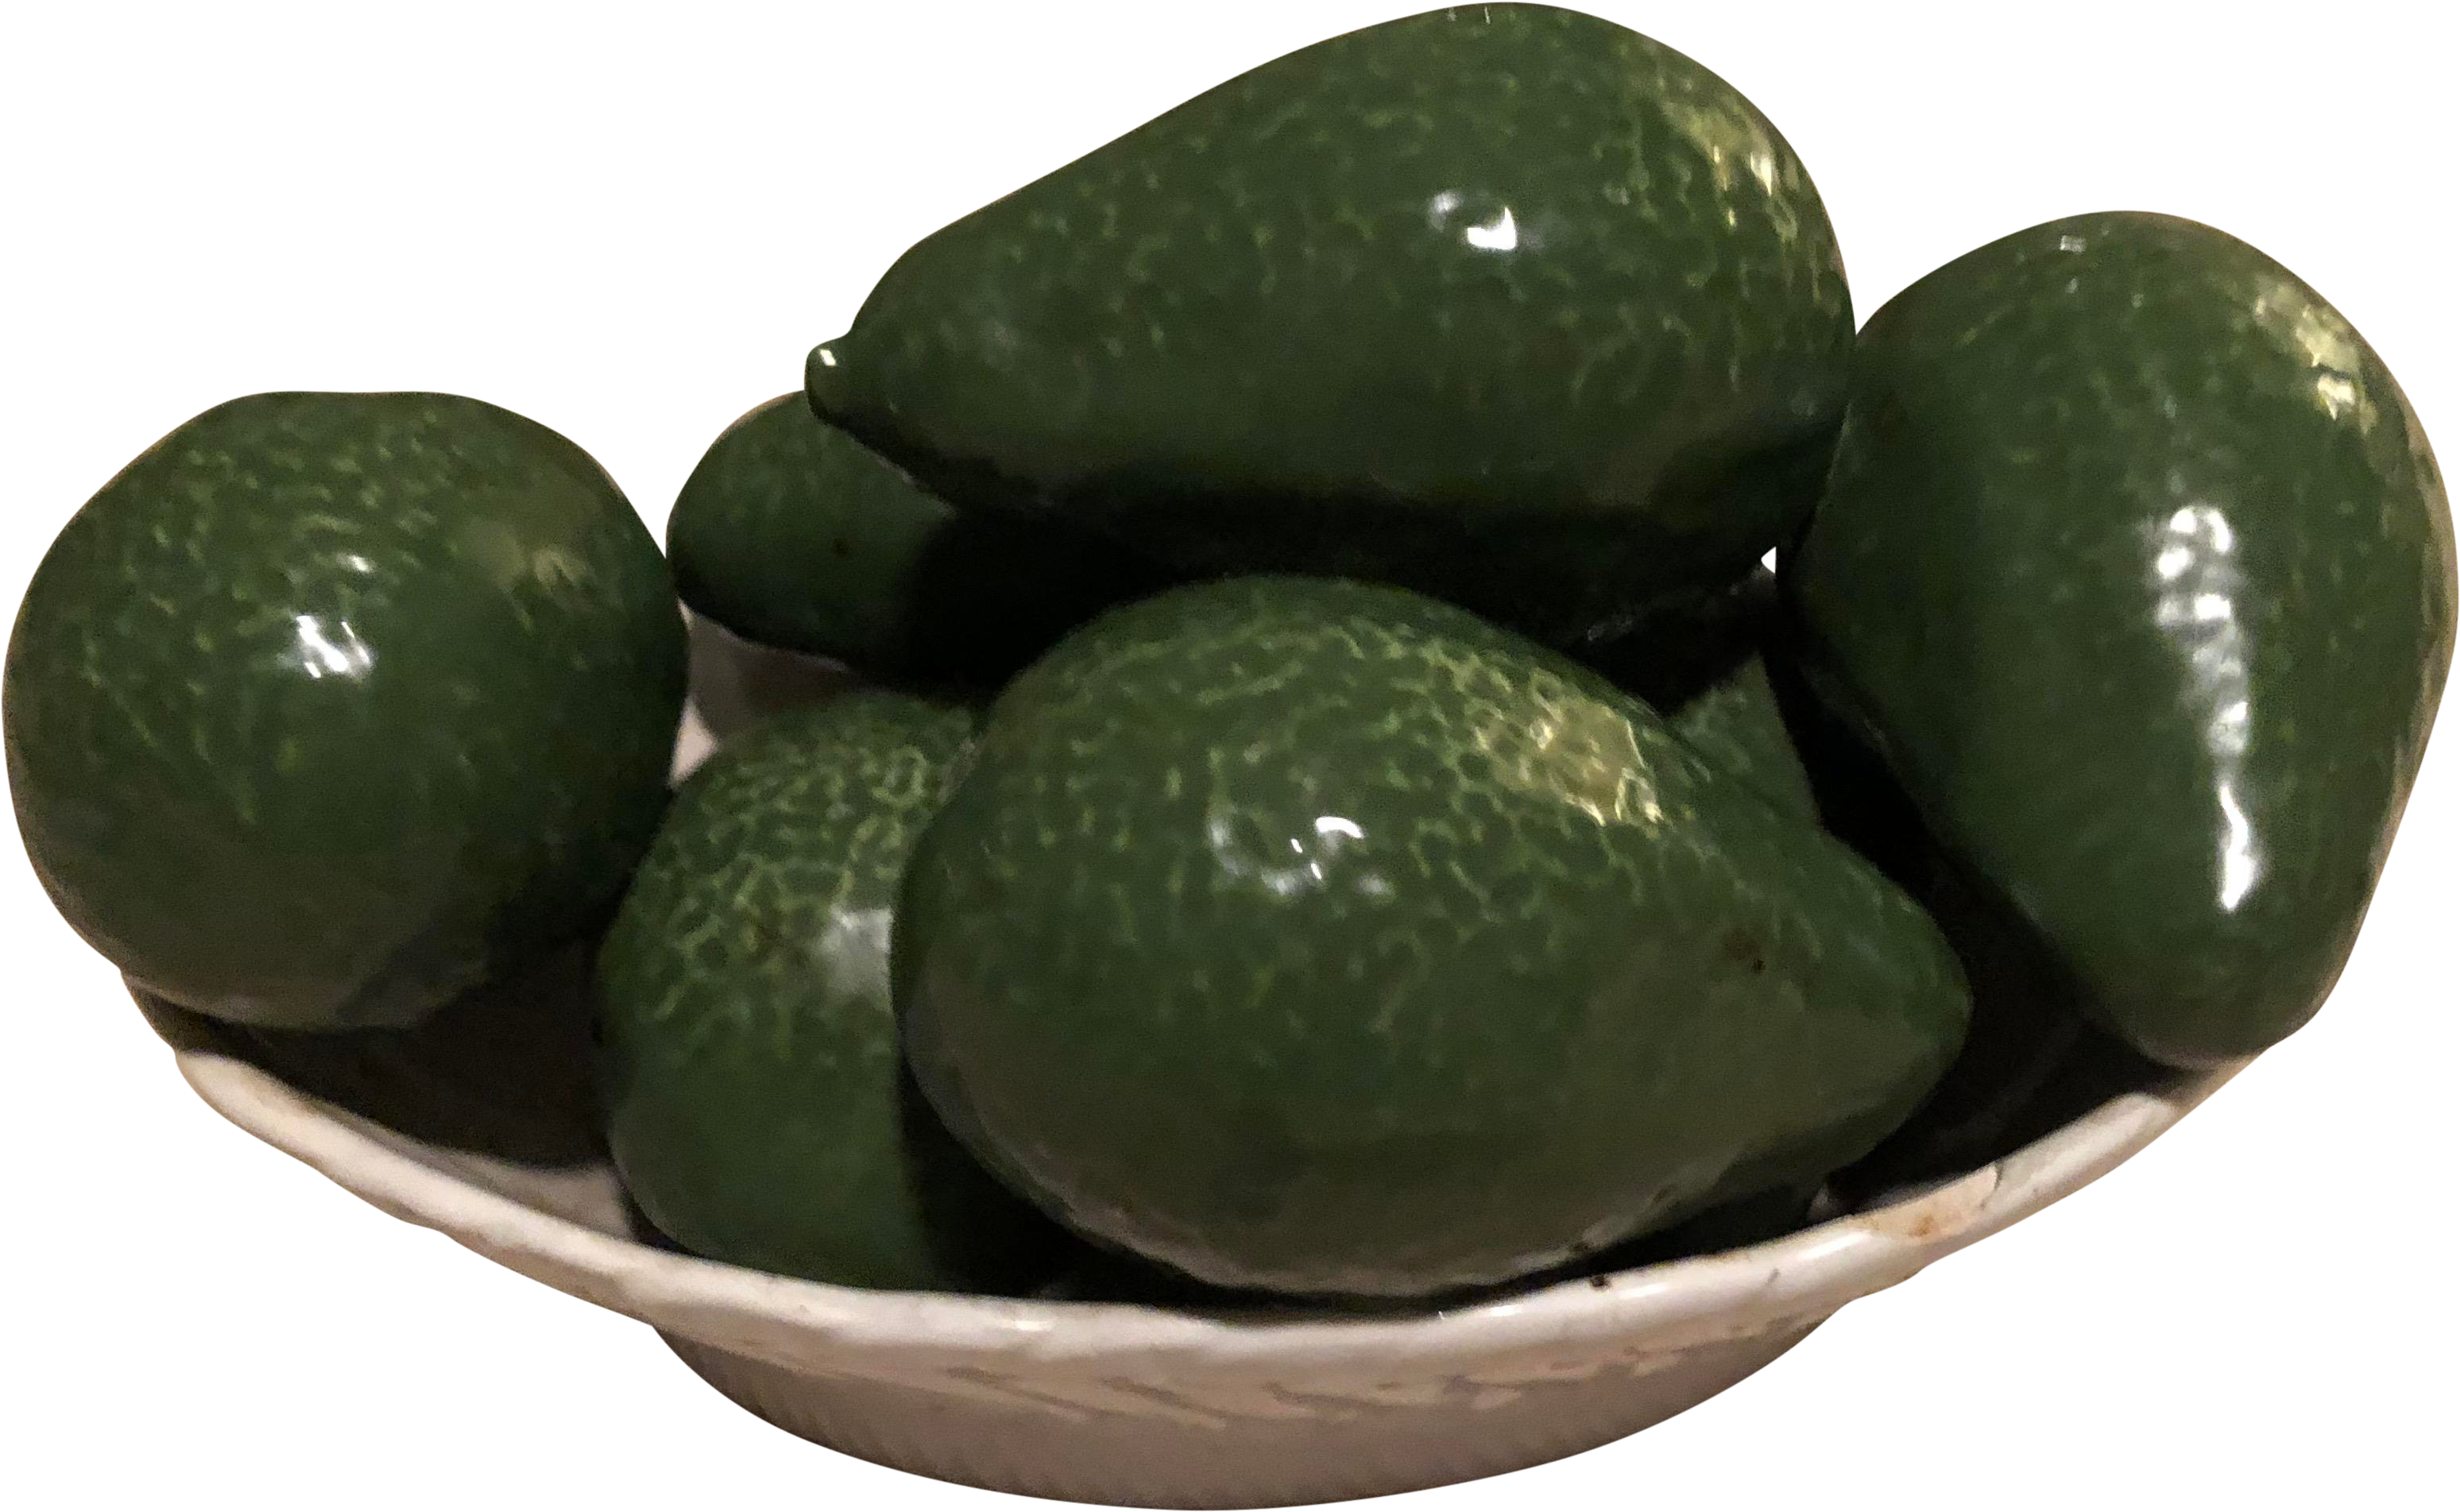 A Bowl Of Avocados